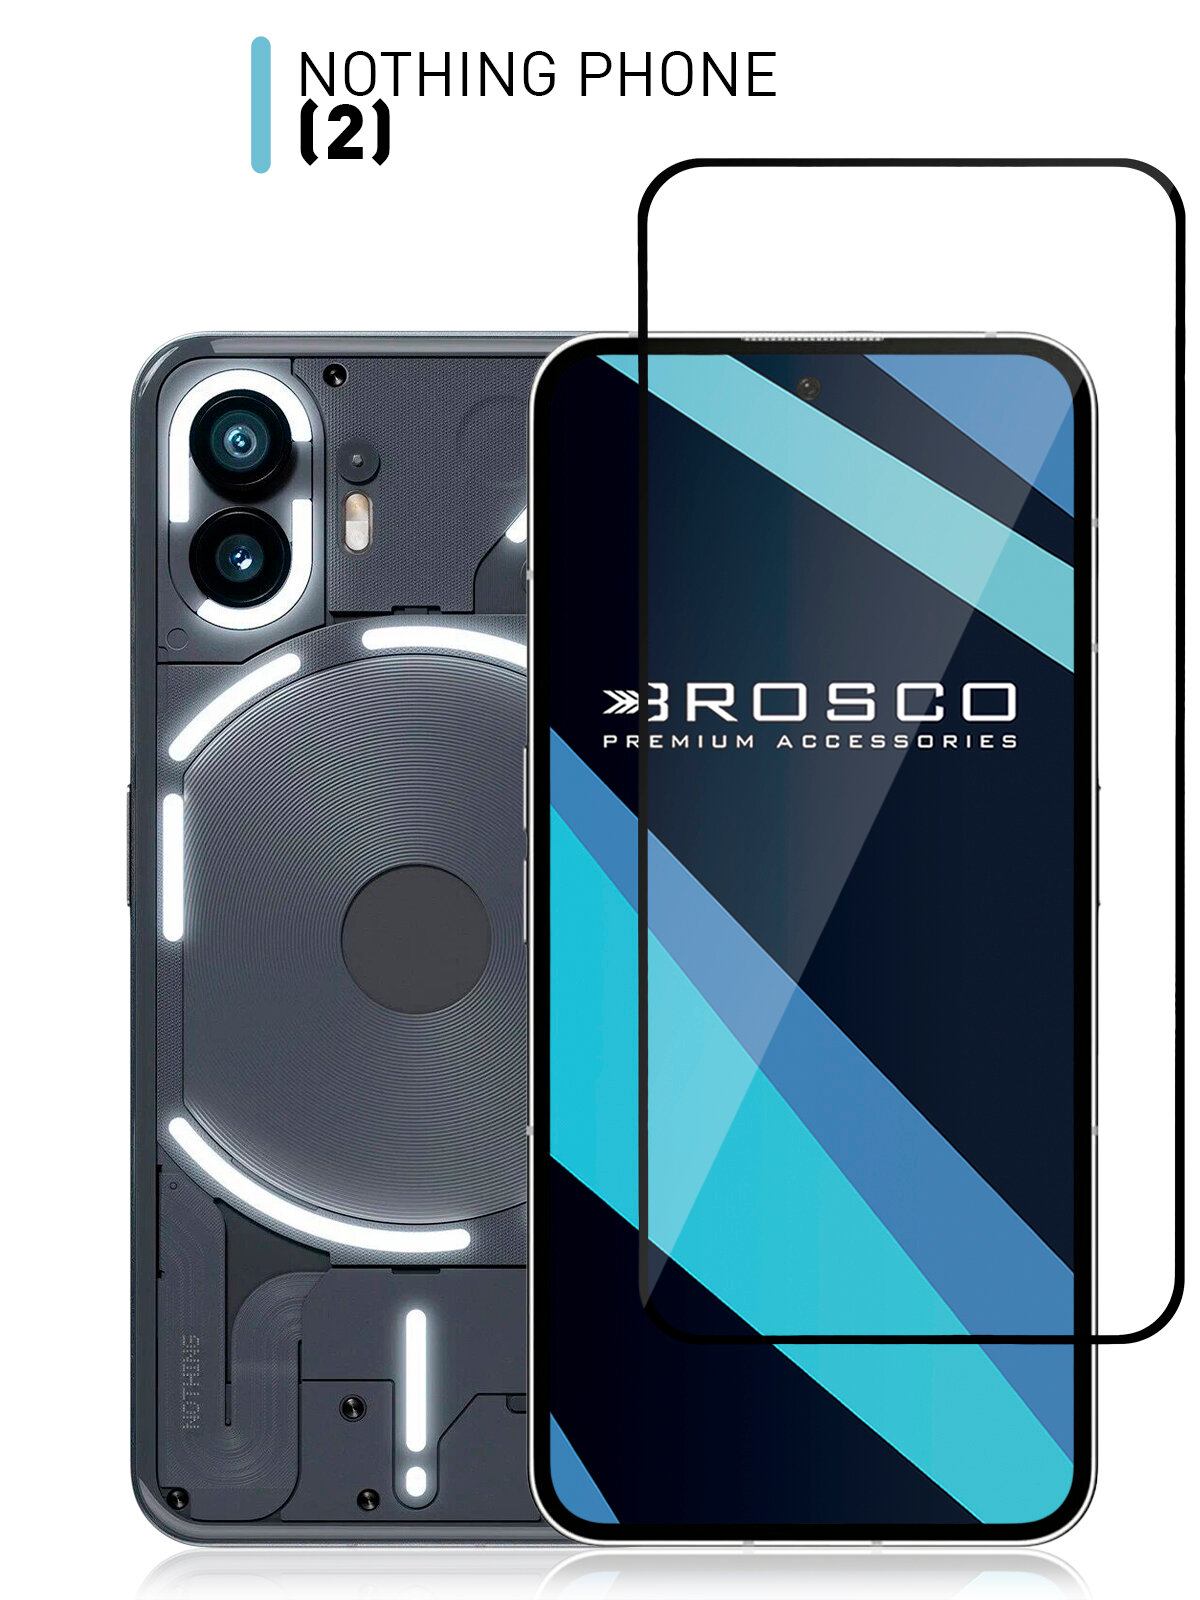 Защитное стекло ROSCO для Nothing Phone 2 (Насинг фон 2) закалённое с олеофобным покрытием, прозрачное стекло, с рамкой